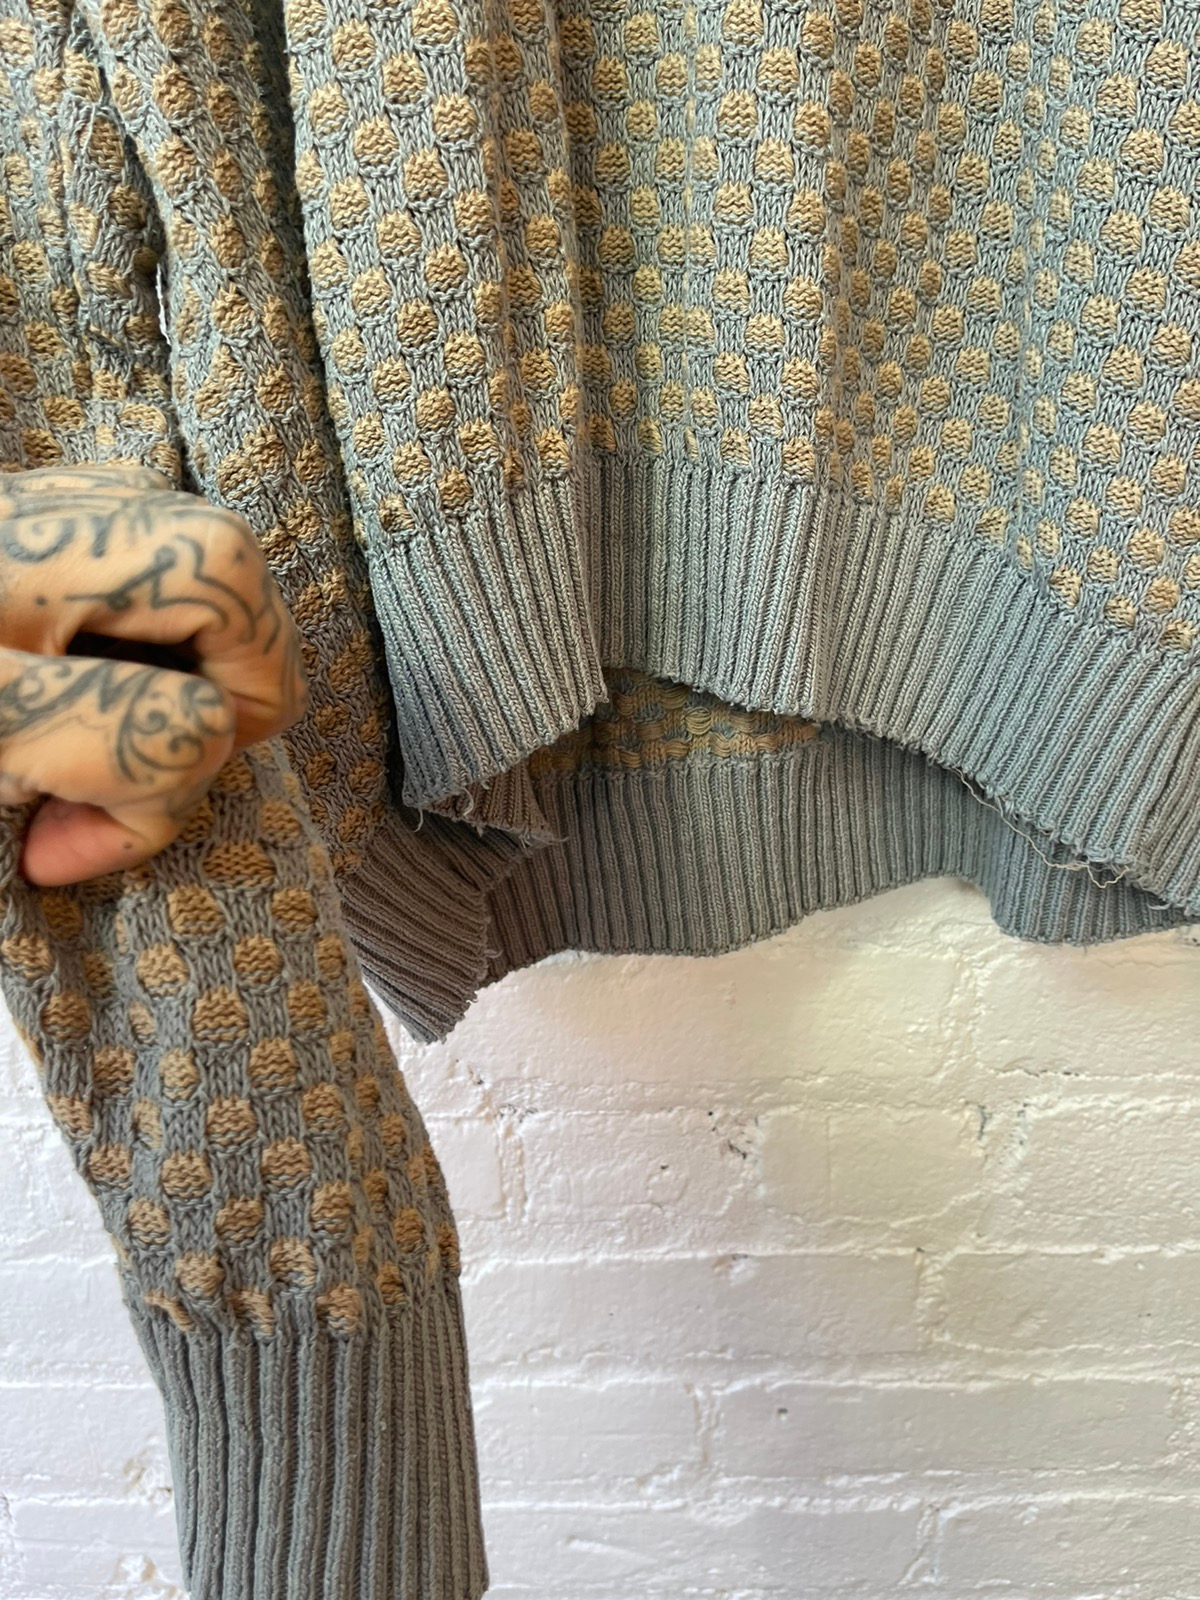 Vintage THRASHED Giorgi Armani Silk Sweater M-XL